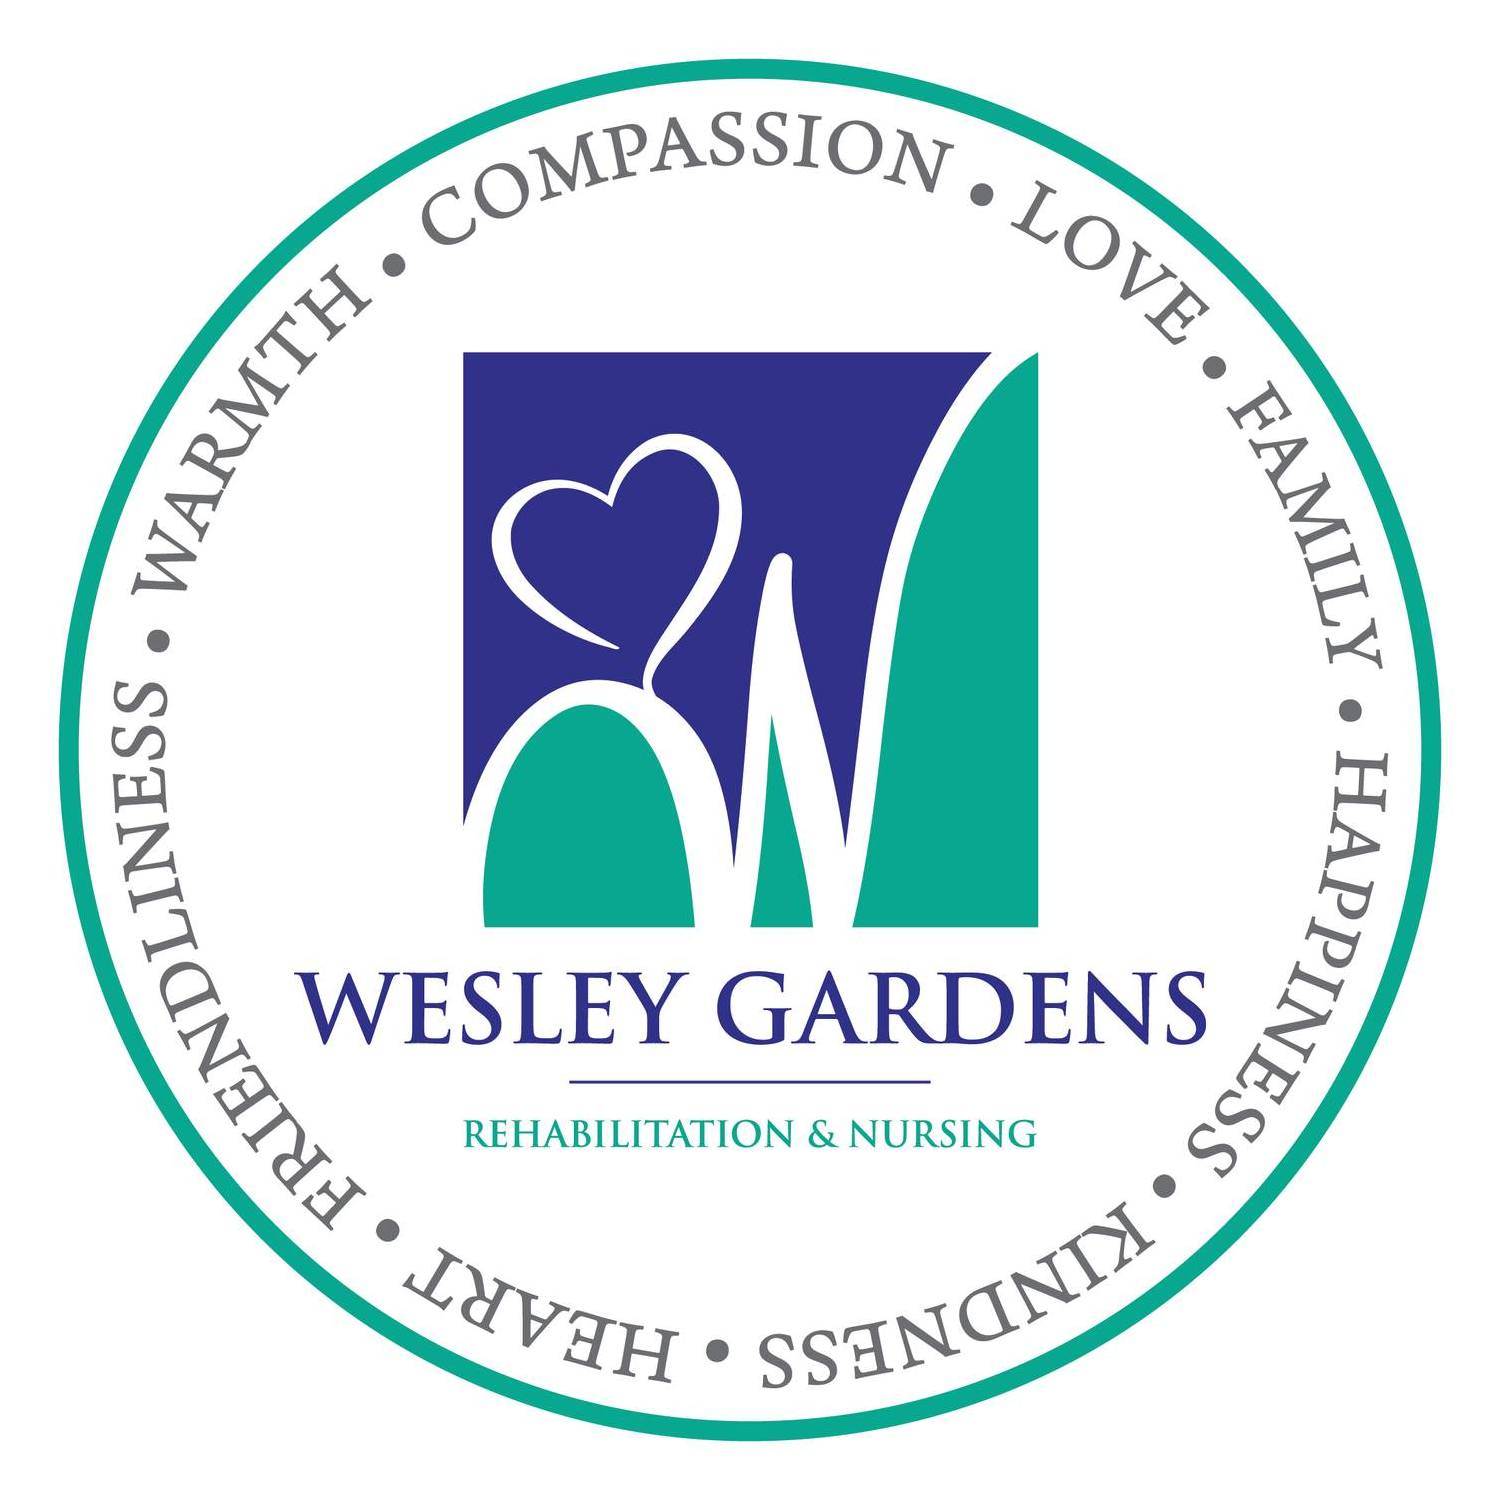 Wesley Gardens